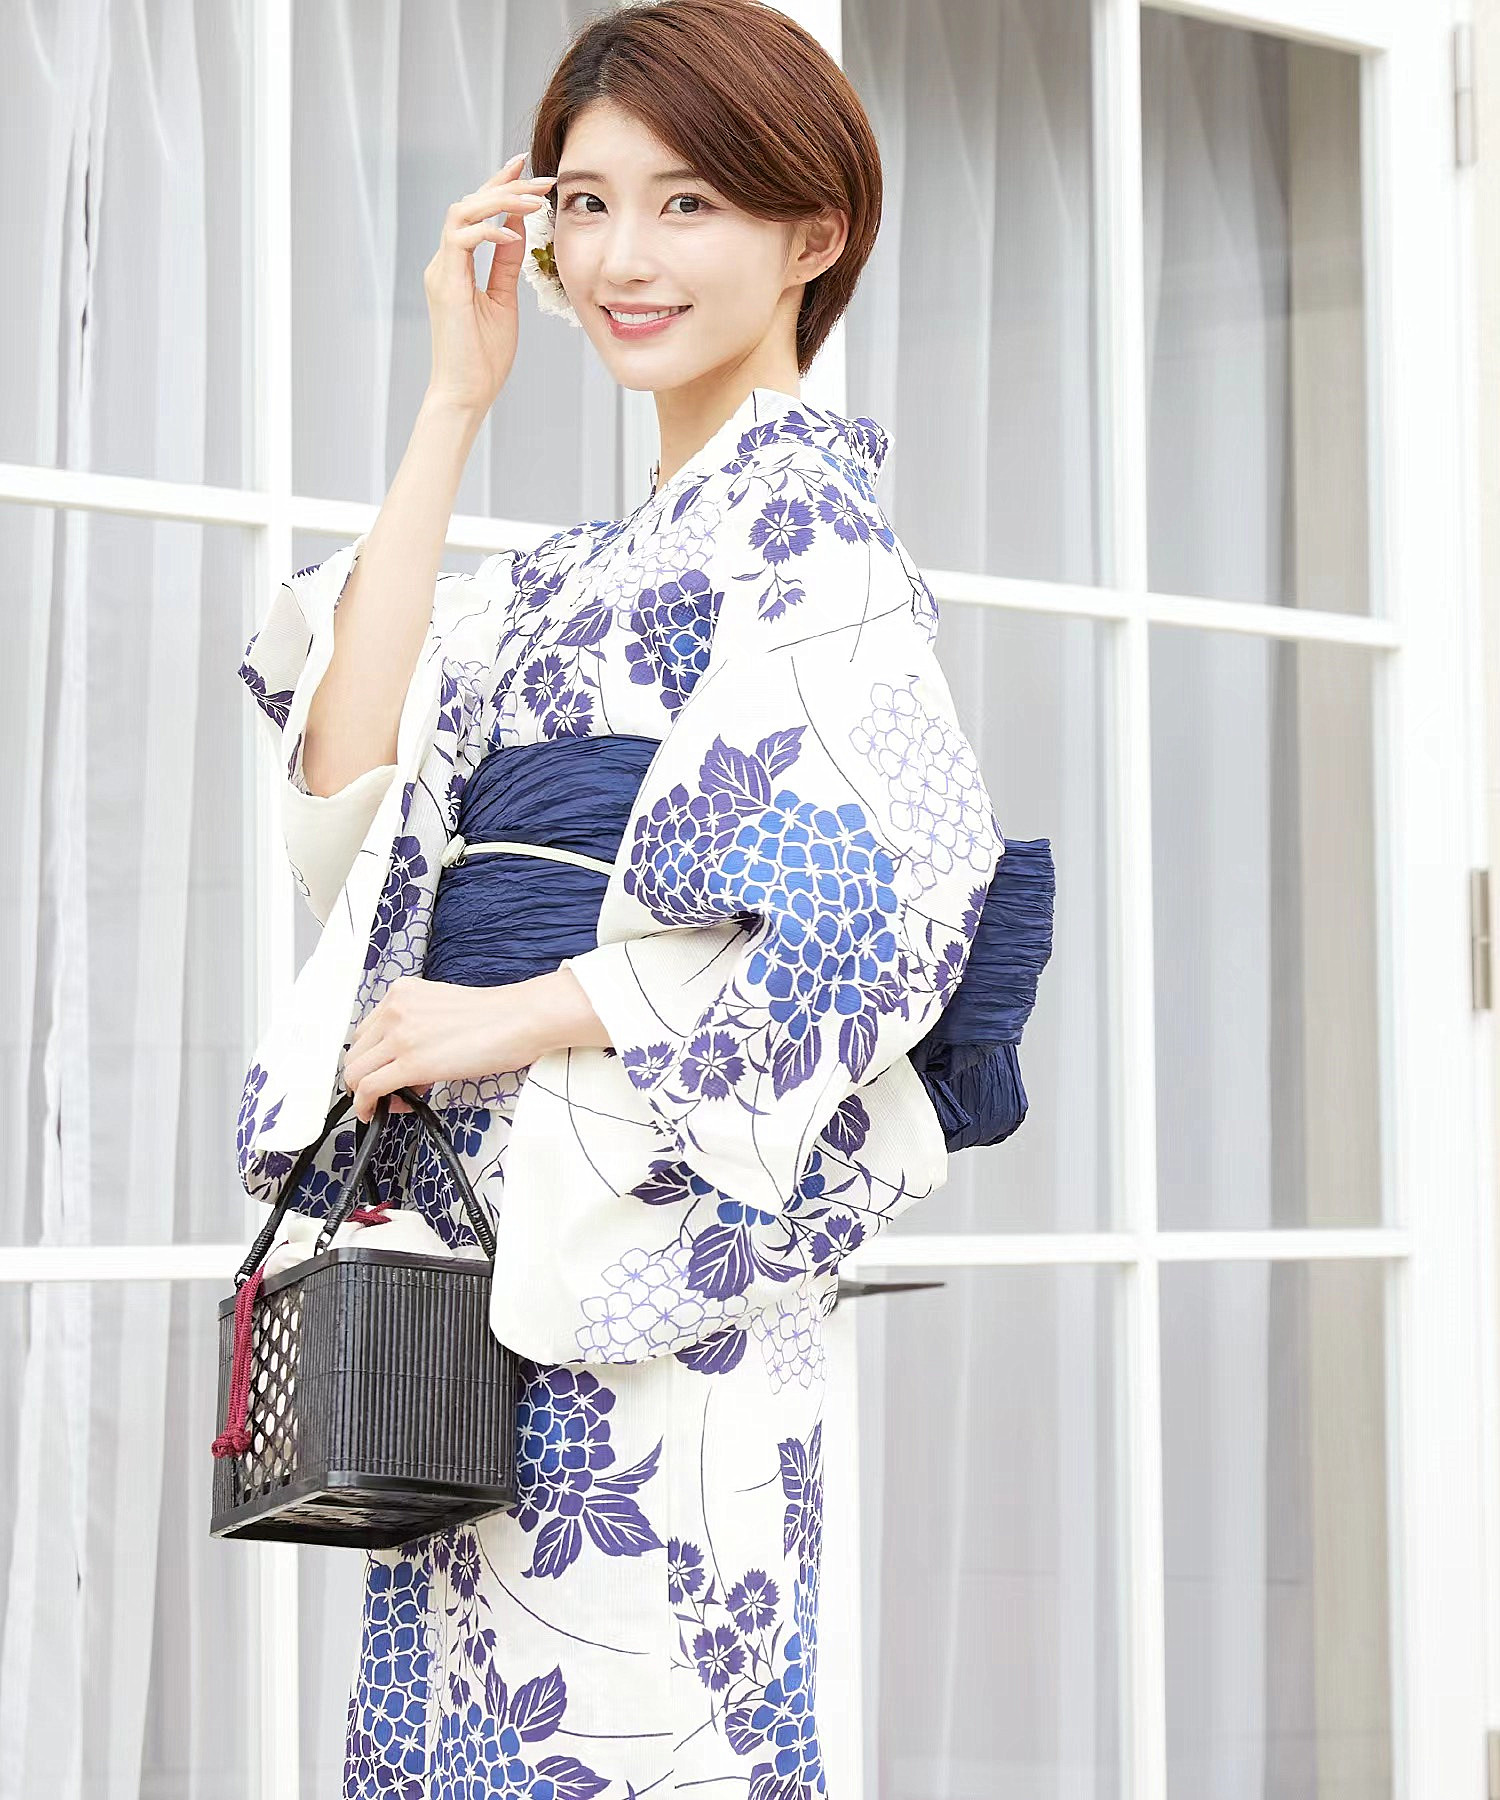 日本和服浴衣女 传统正装高档棉麻款式日系拍摄复古旅游服饰